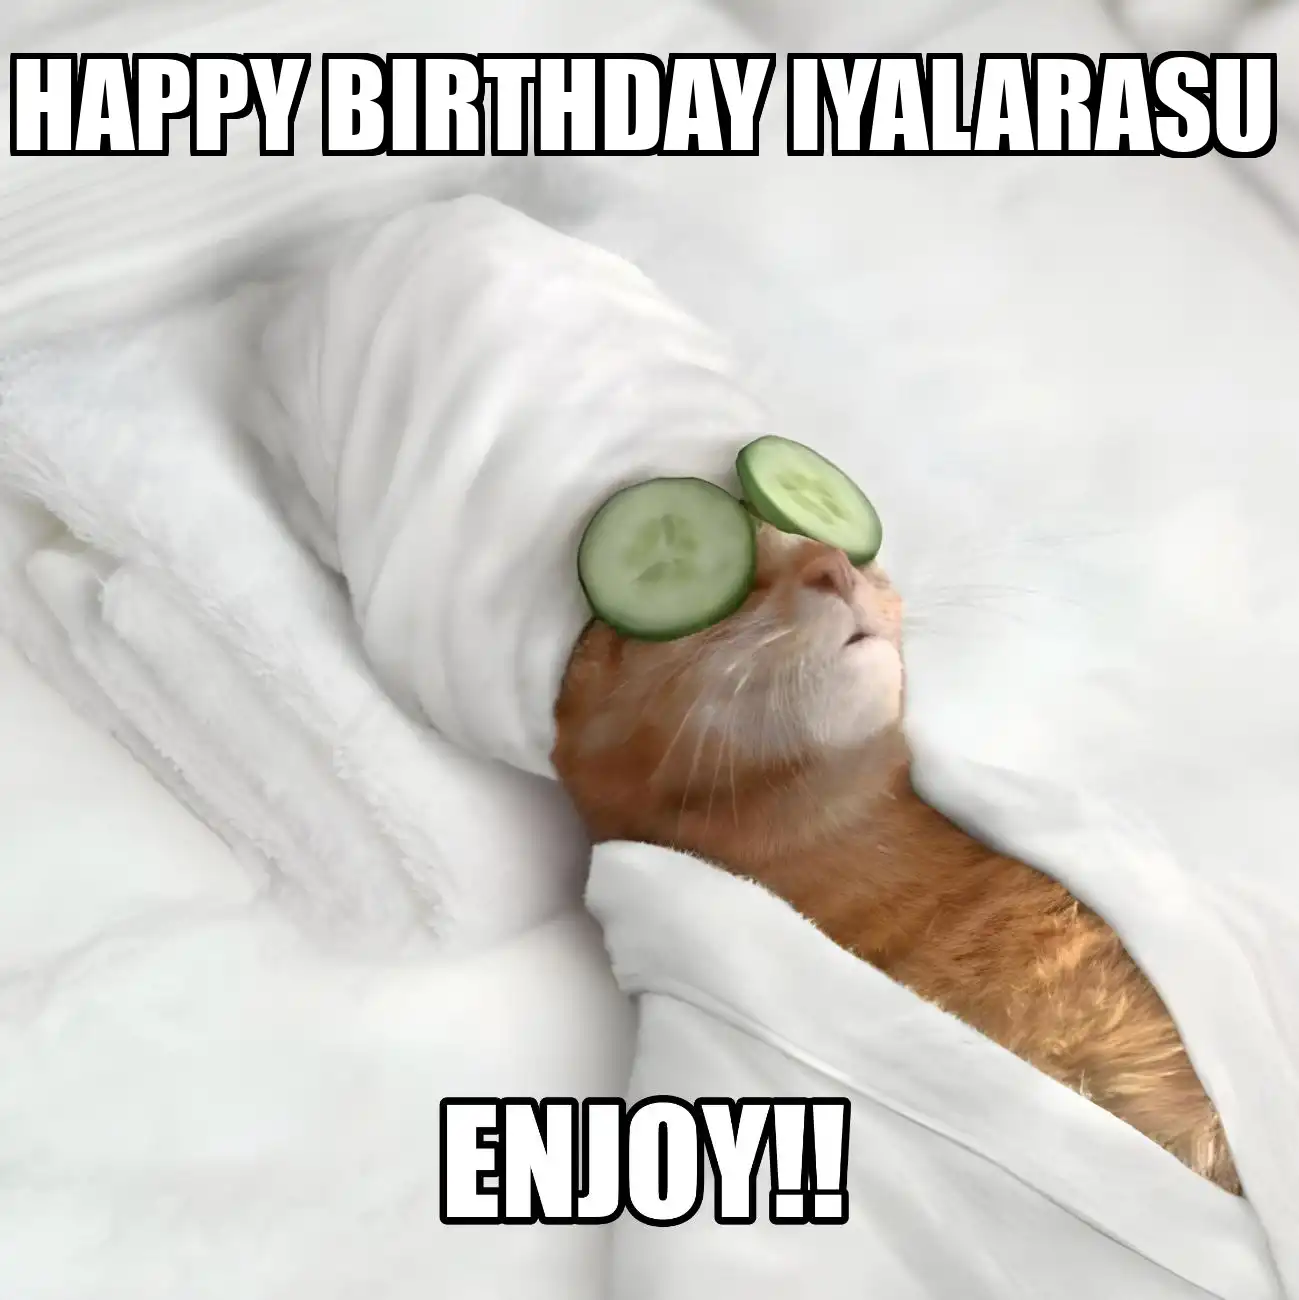 Happy Birthday Iyalarasu Enjoy Cat Meme